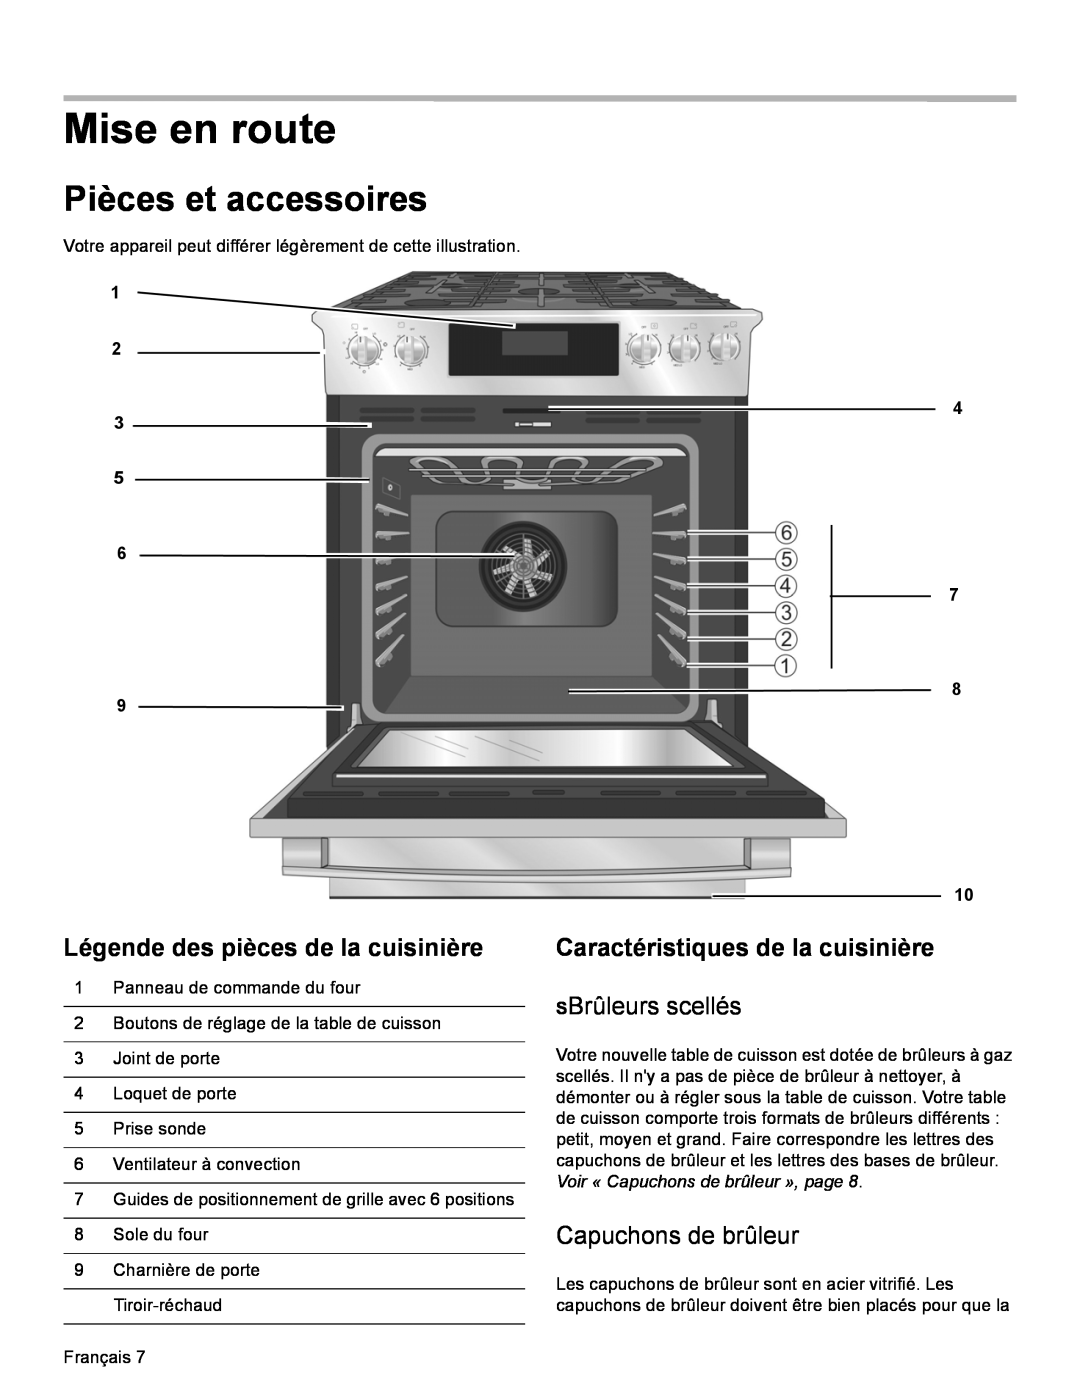 Bosch Appliances HDI8054U Mise en route, Pièces et accessoires, Légende des pièces de la cuisinière, SBrûleurs scellés 